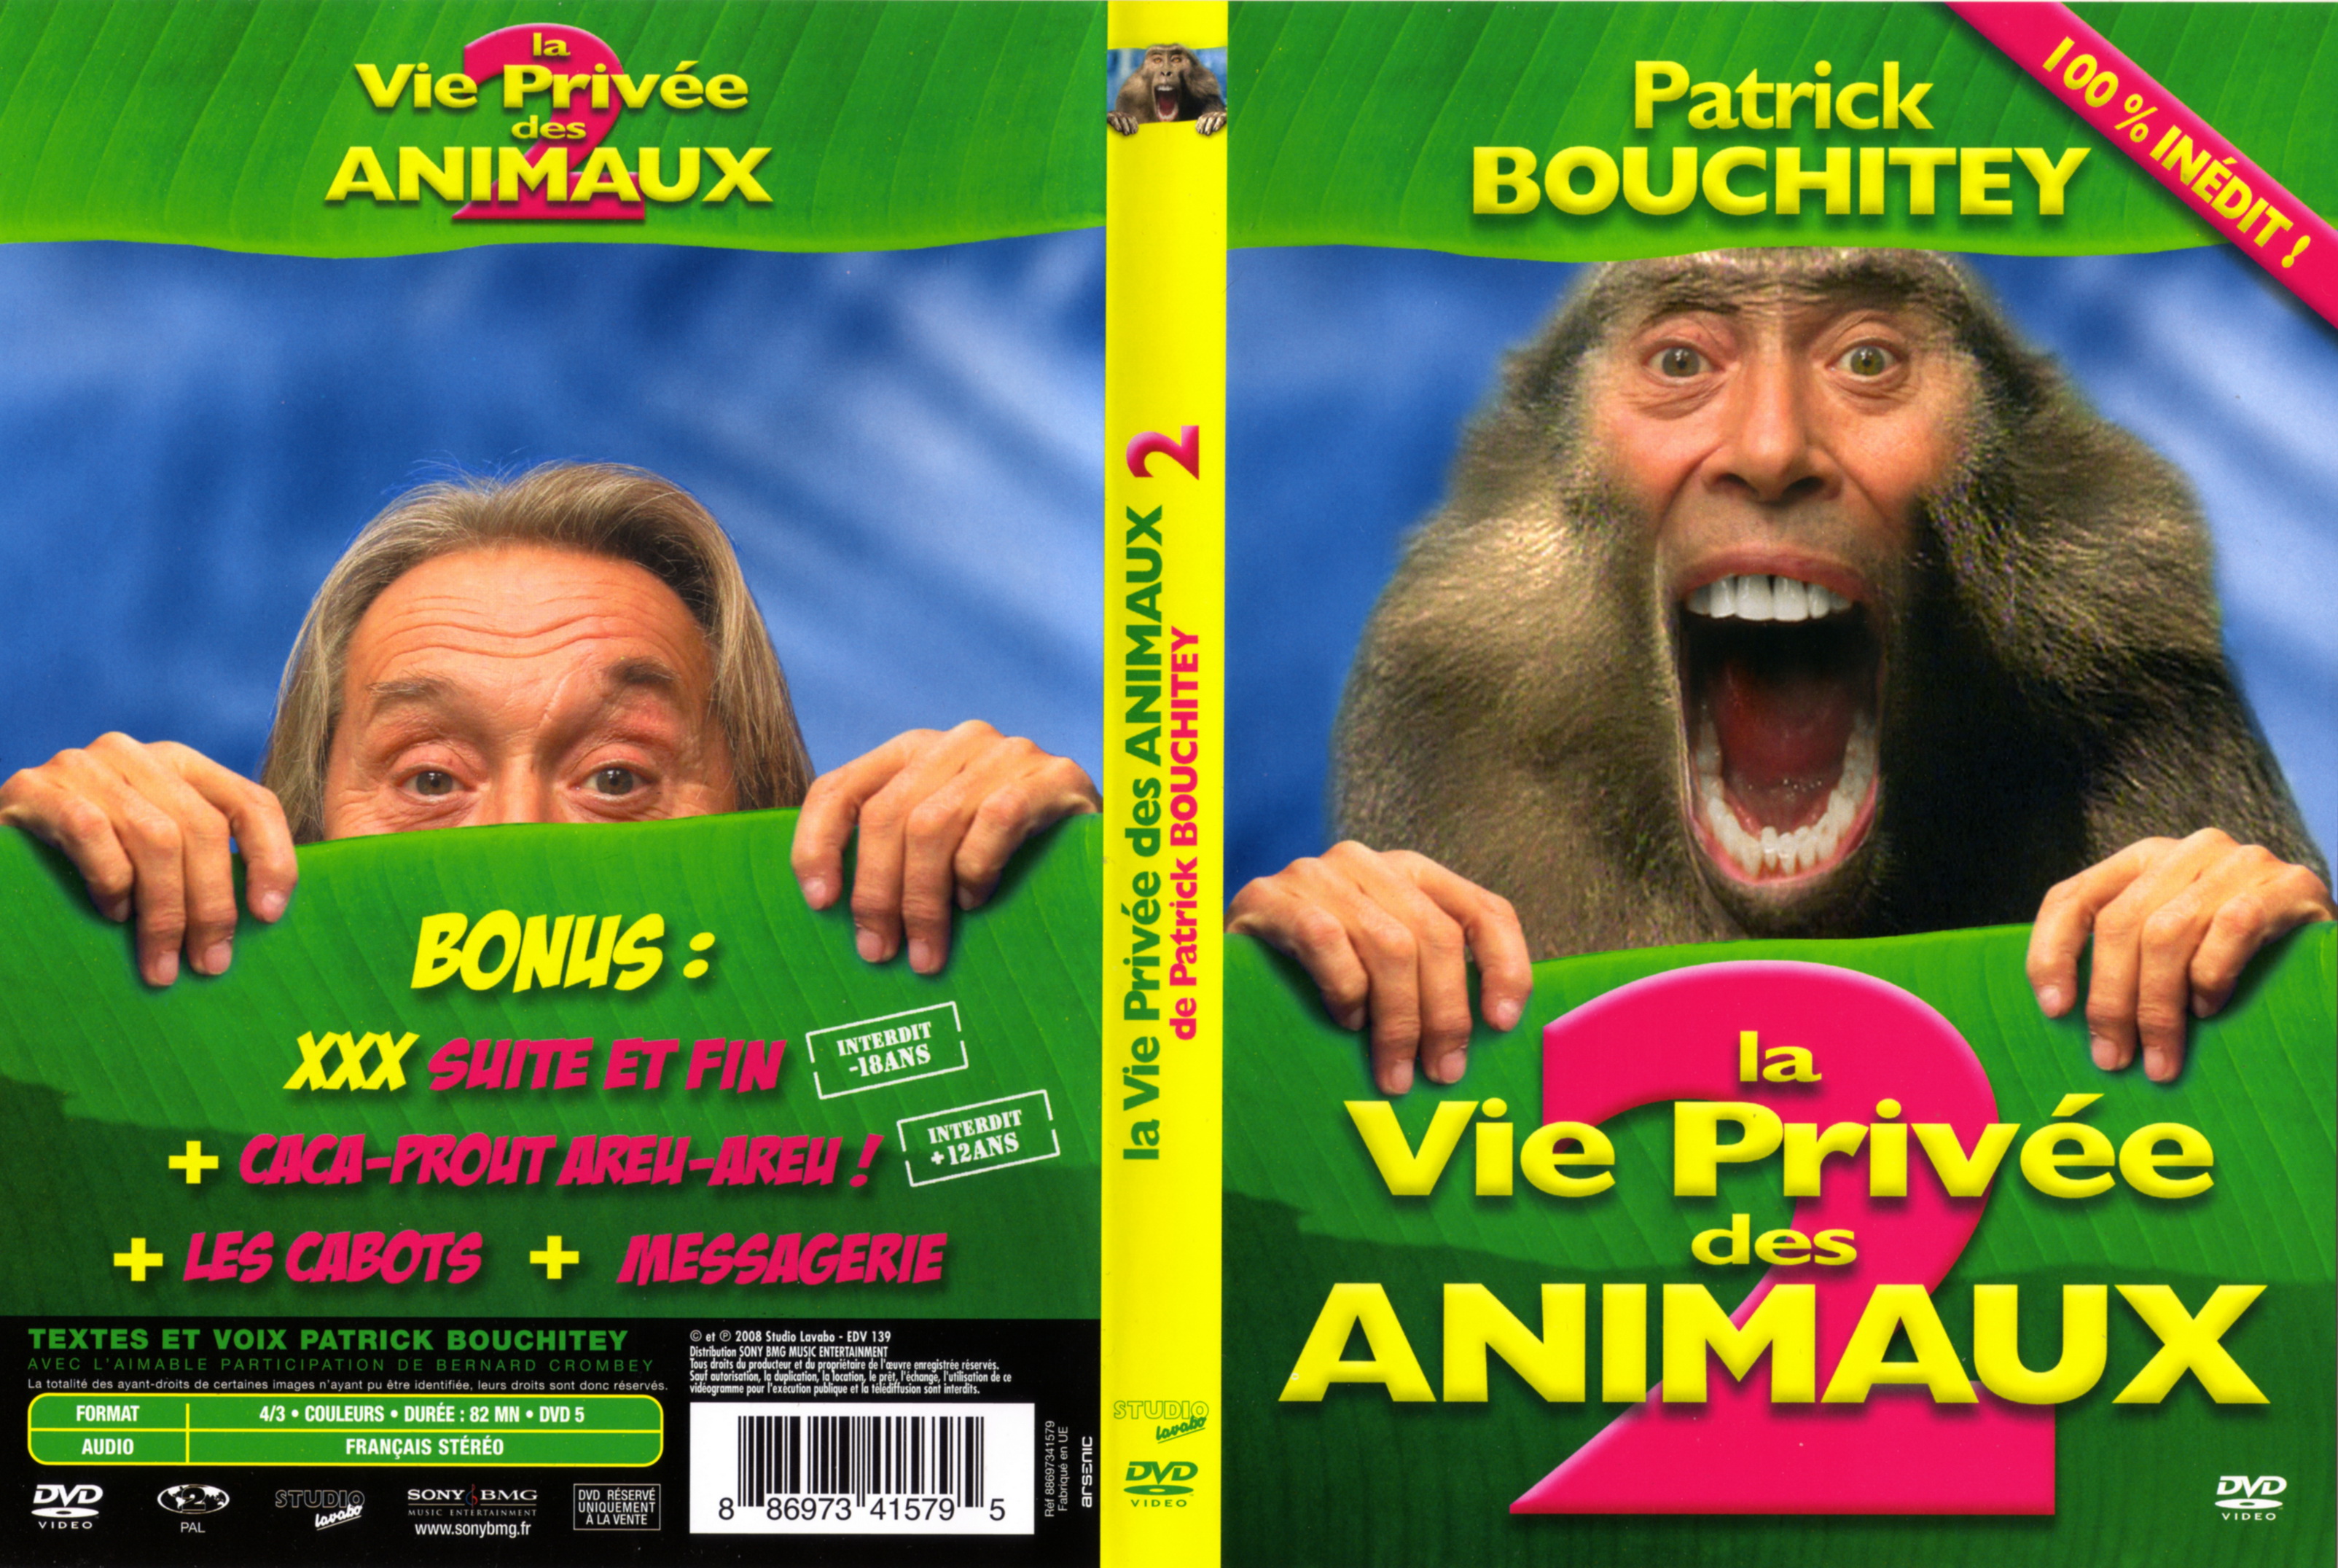 Jaquette DVD La vie prive des animaux 2